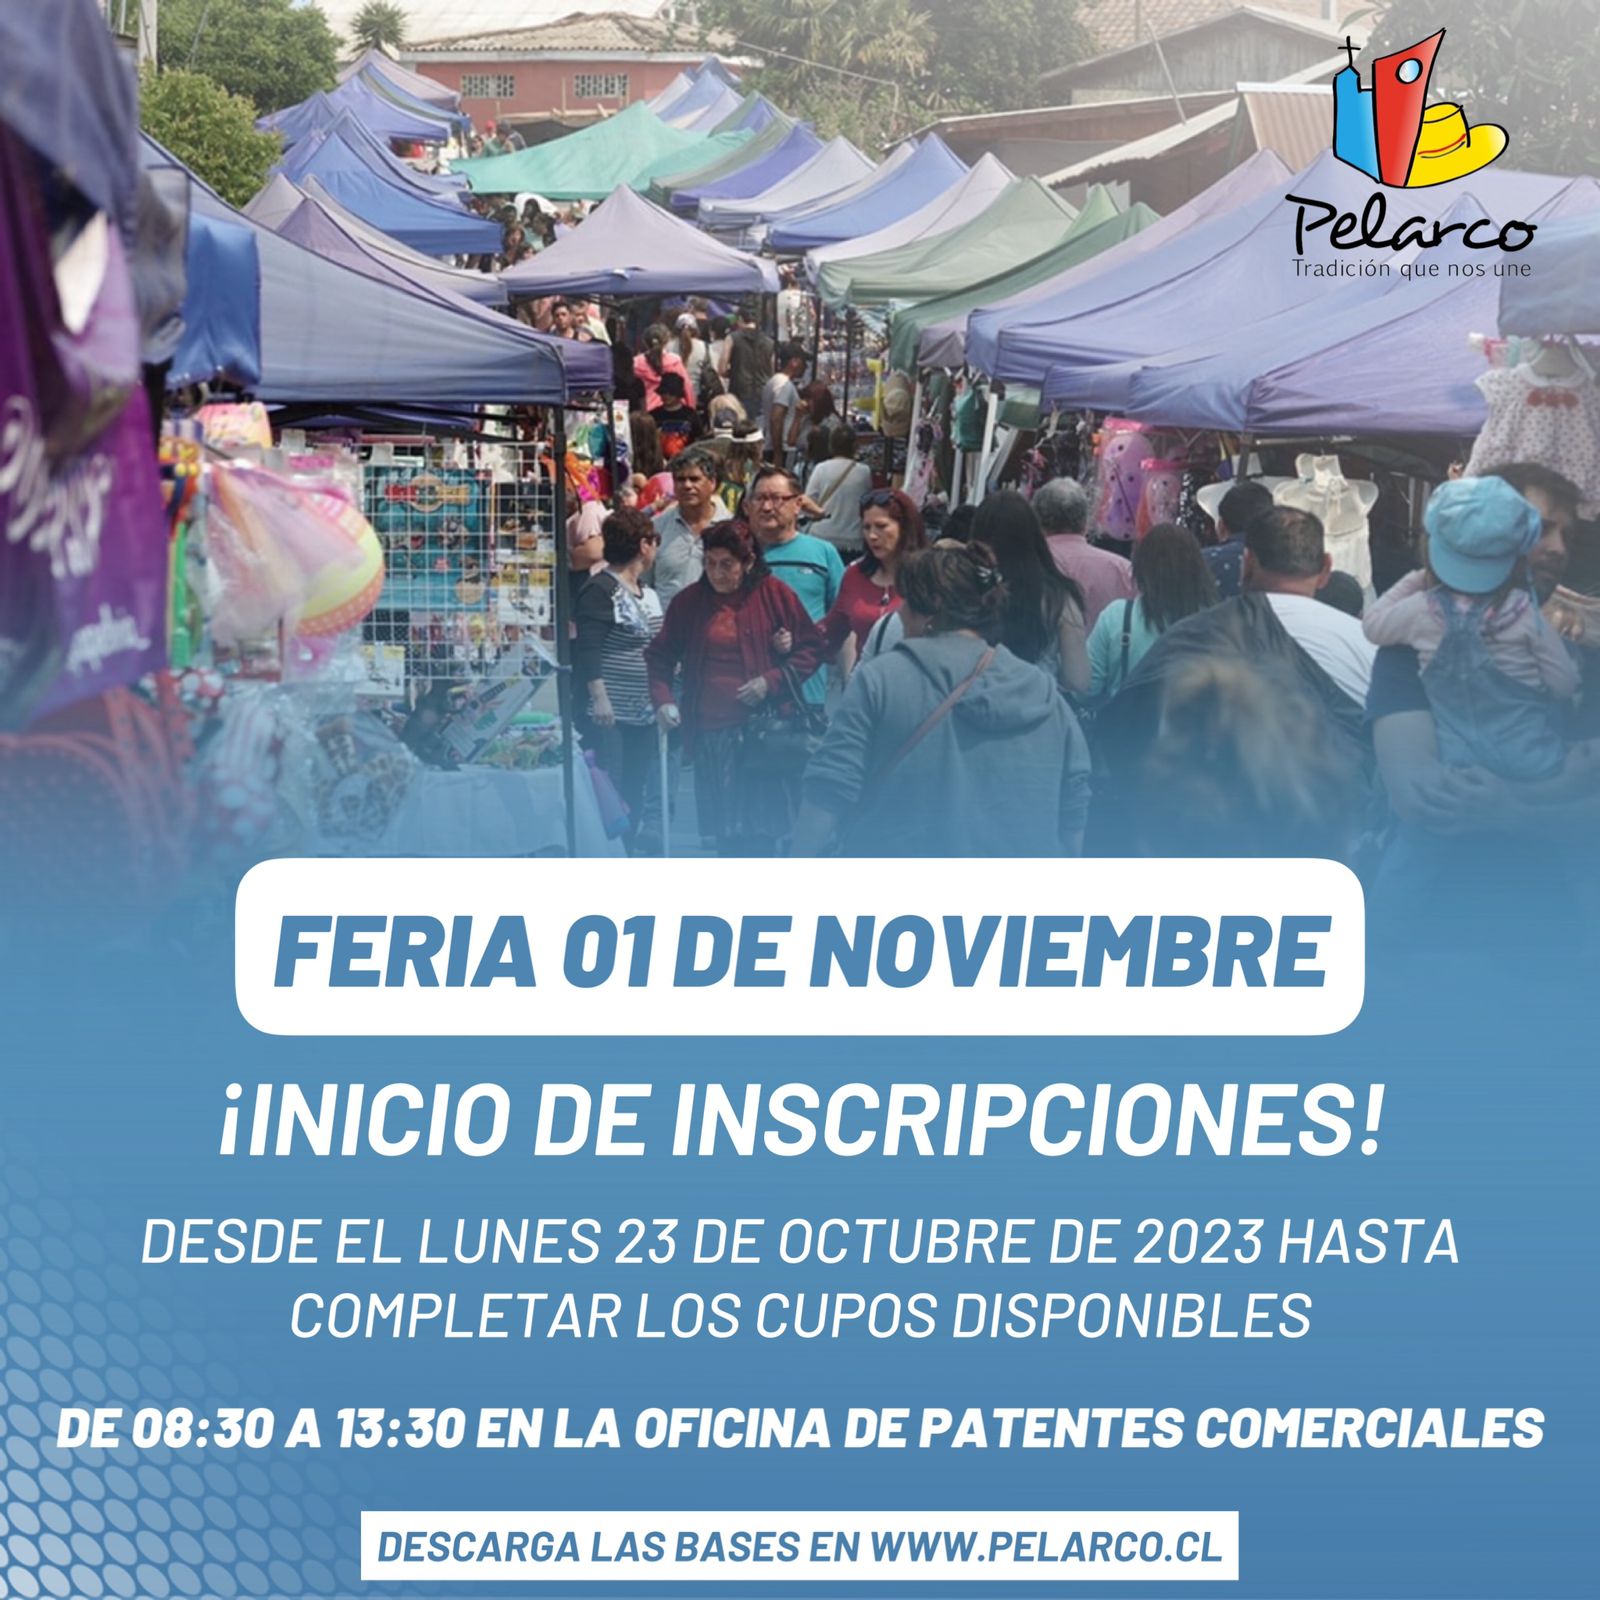 Abren inscripciones para la “Feria 01 de noviembre”